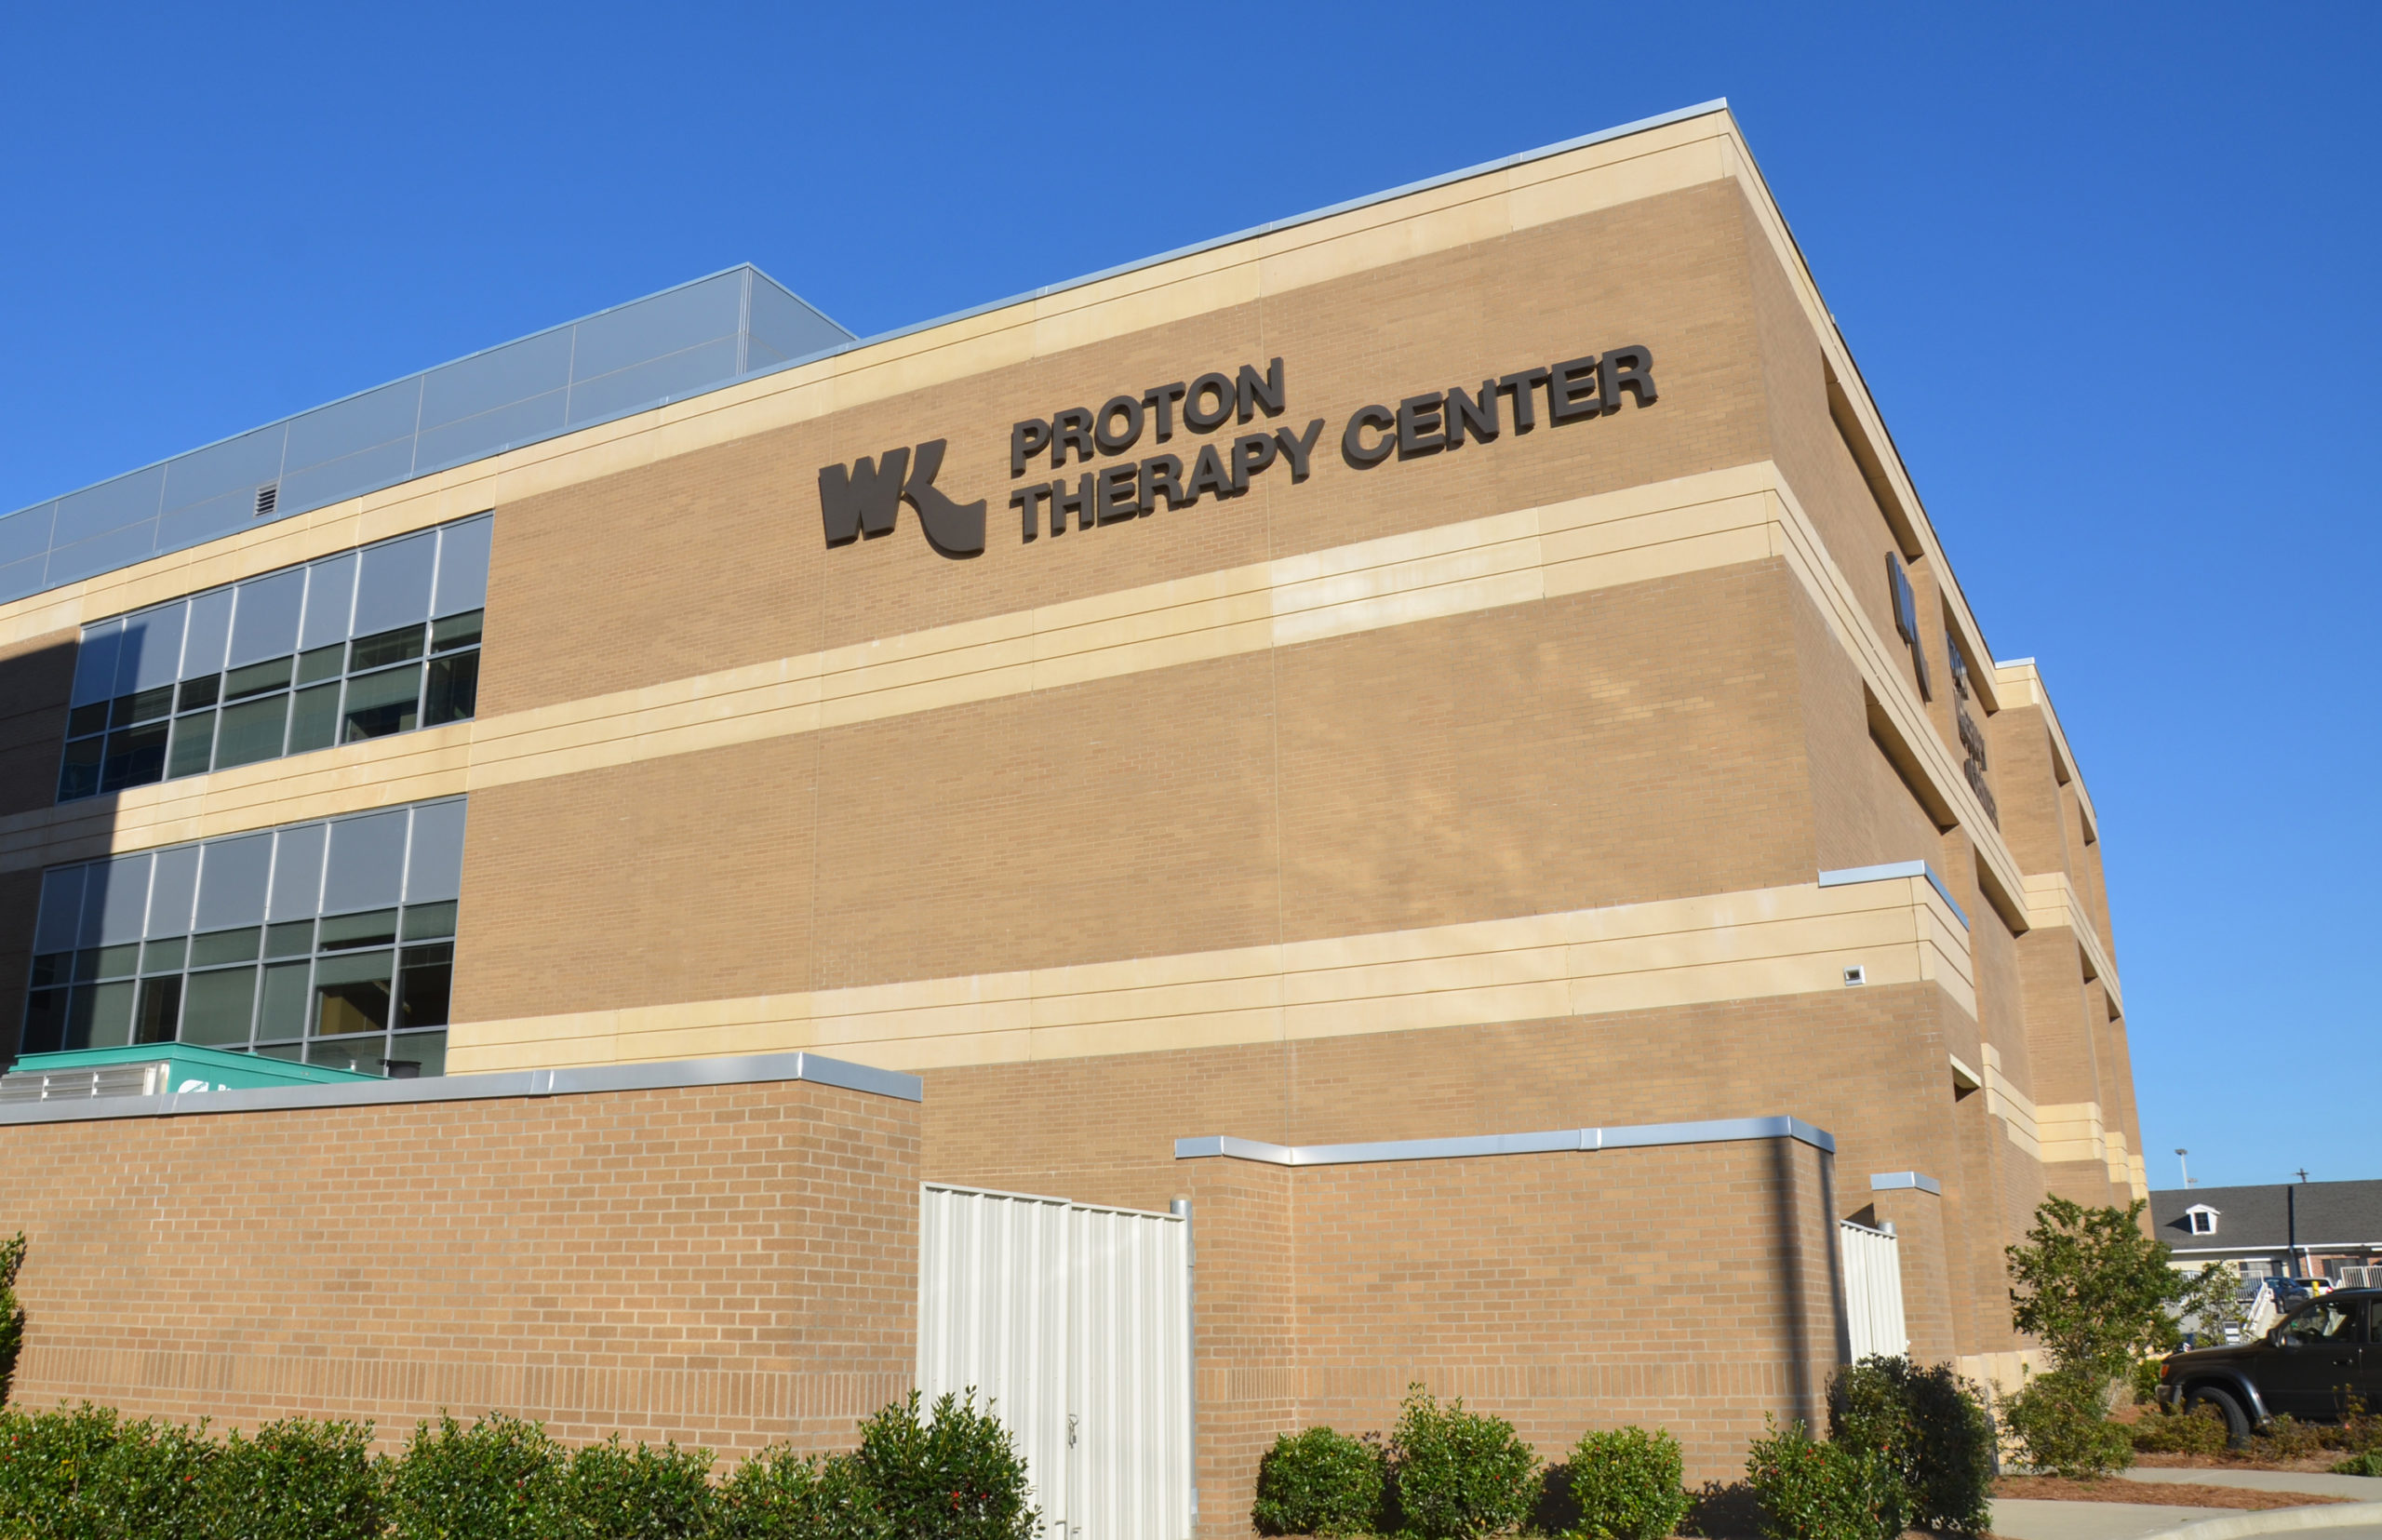 Exterior of the Willis-Knighton Proton Therapy Center